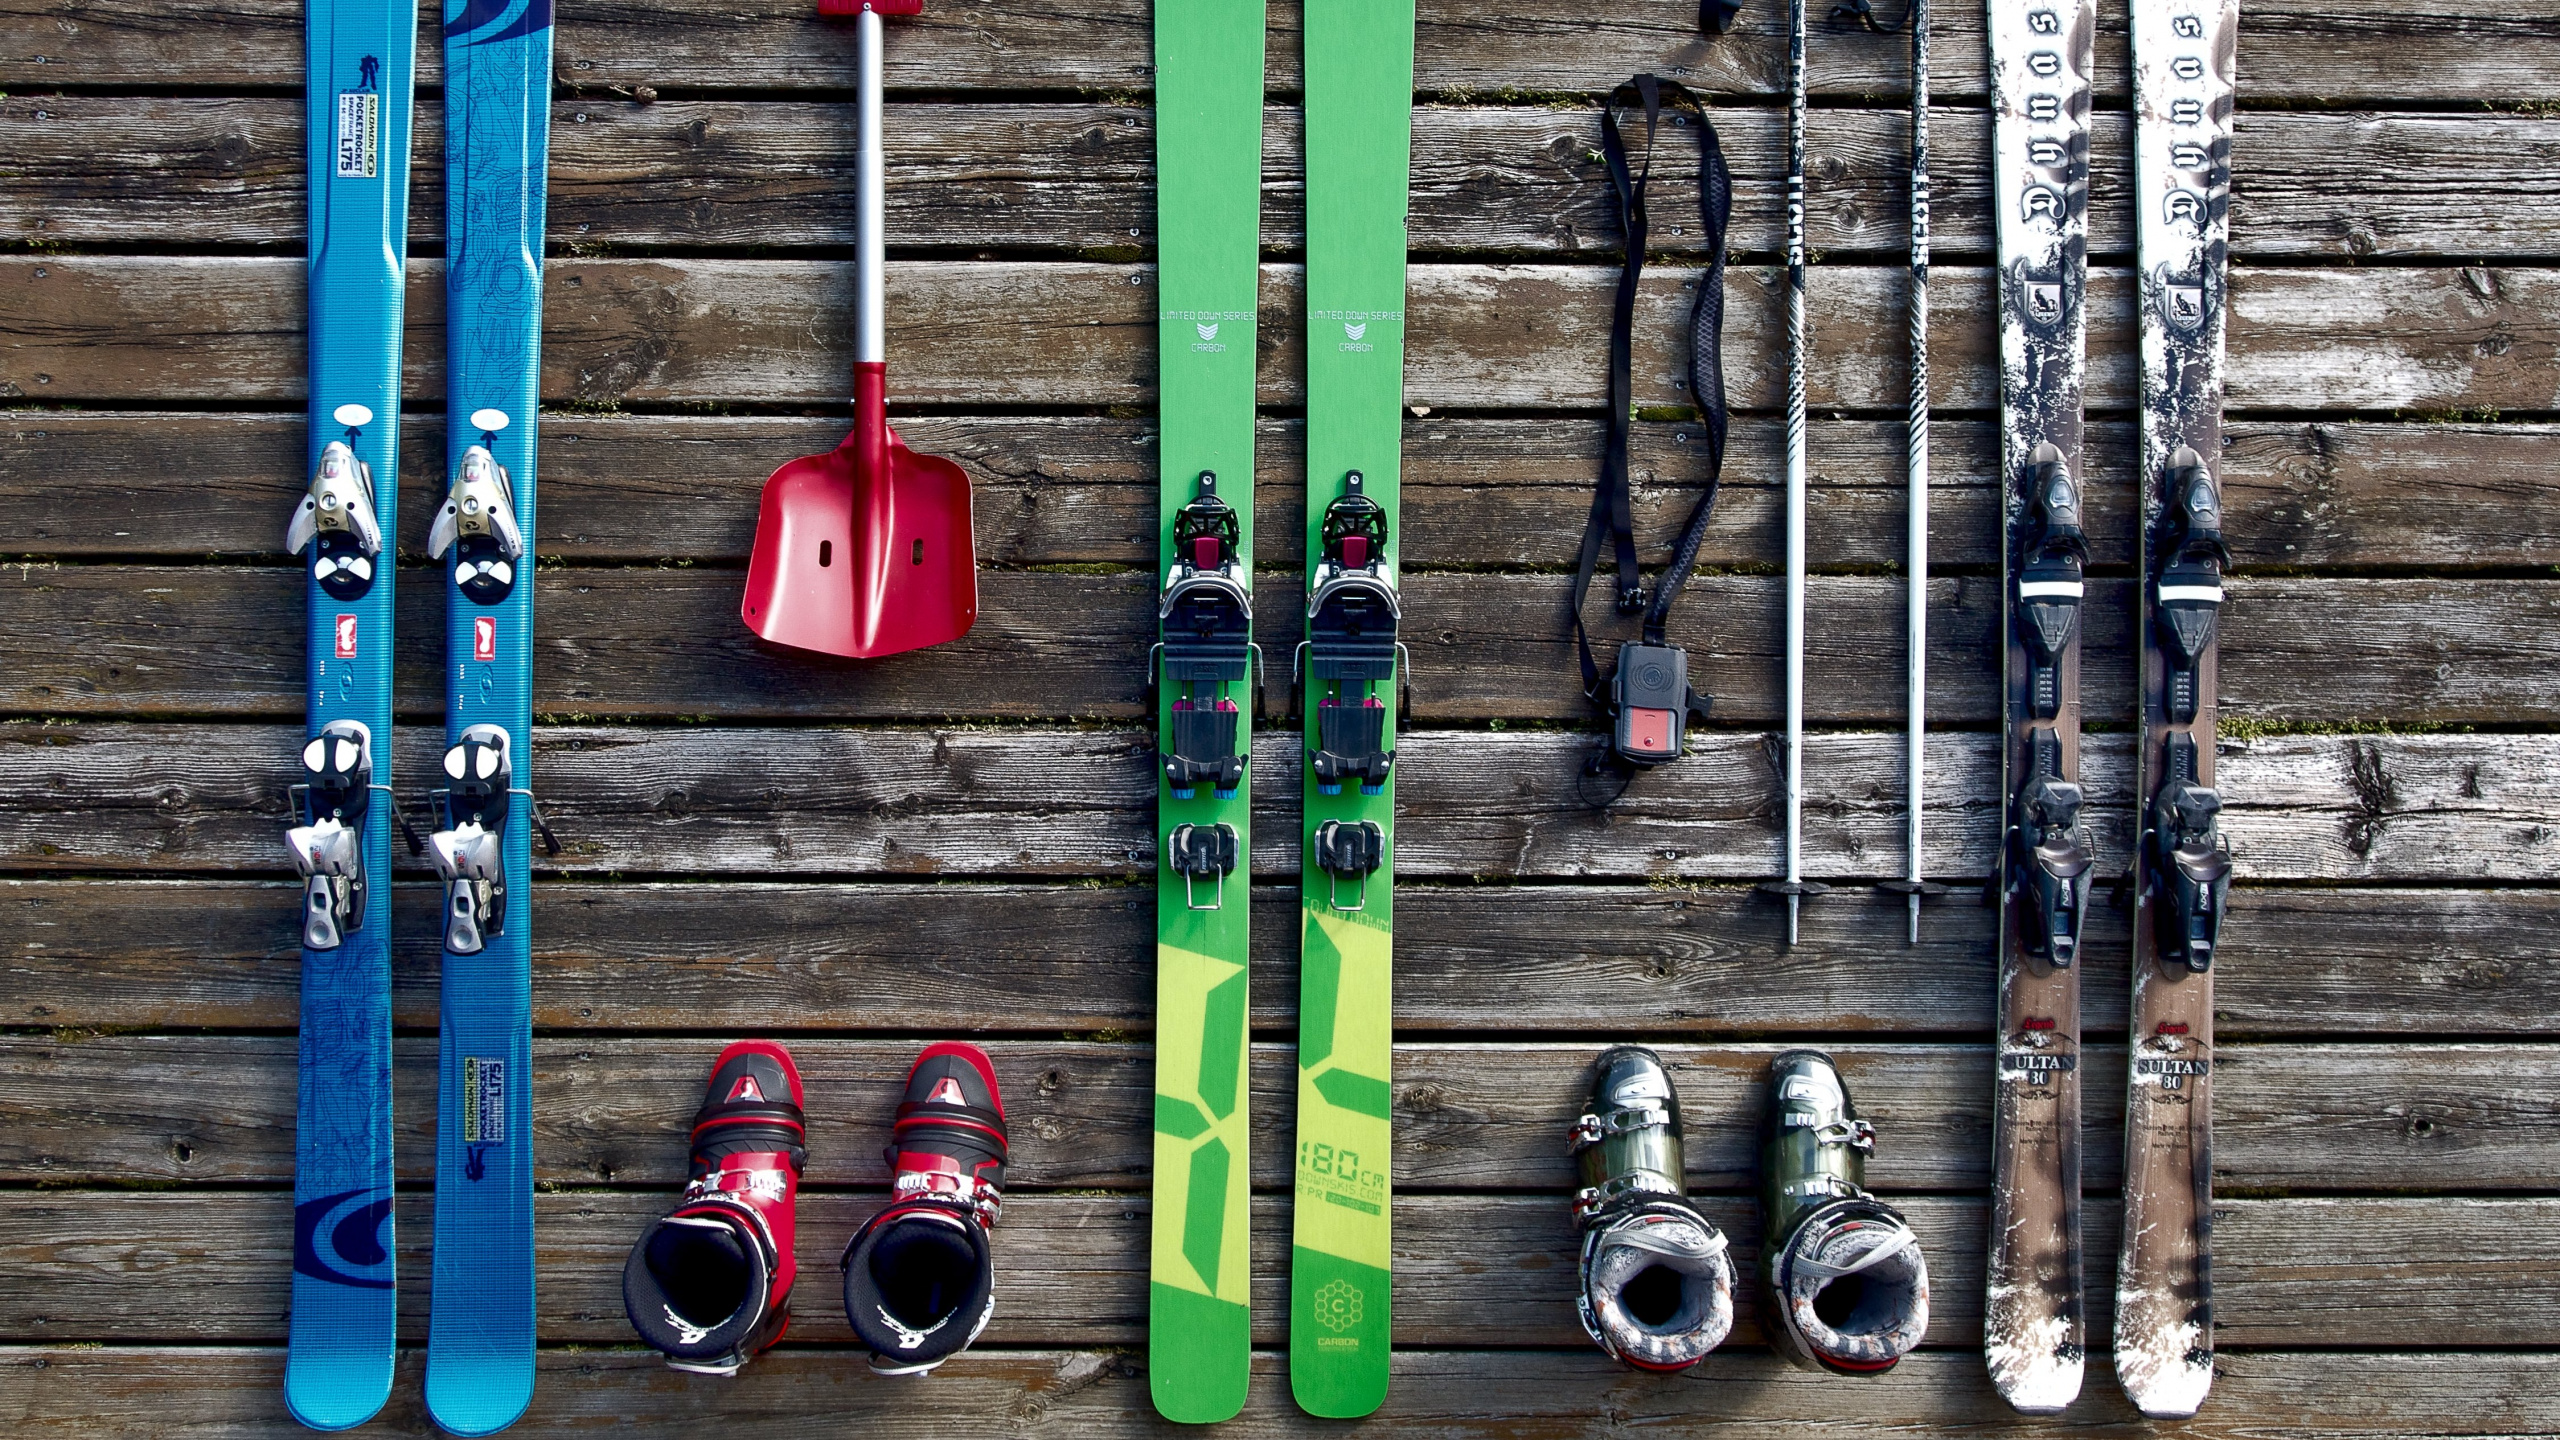 滑雪板, 滑板滑雪, 色彩, 木, 艺术 壁纸 2560x1440 允许